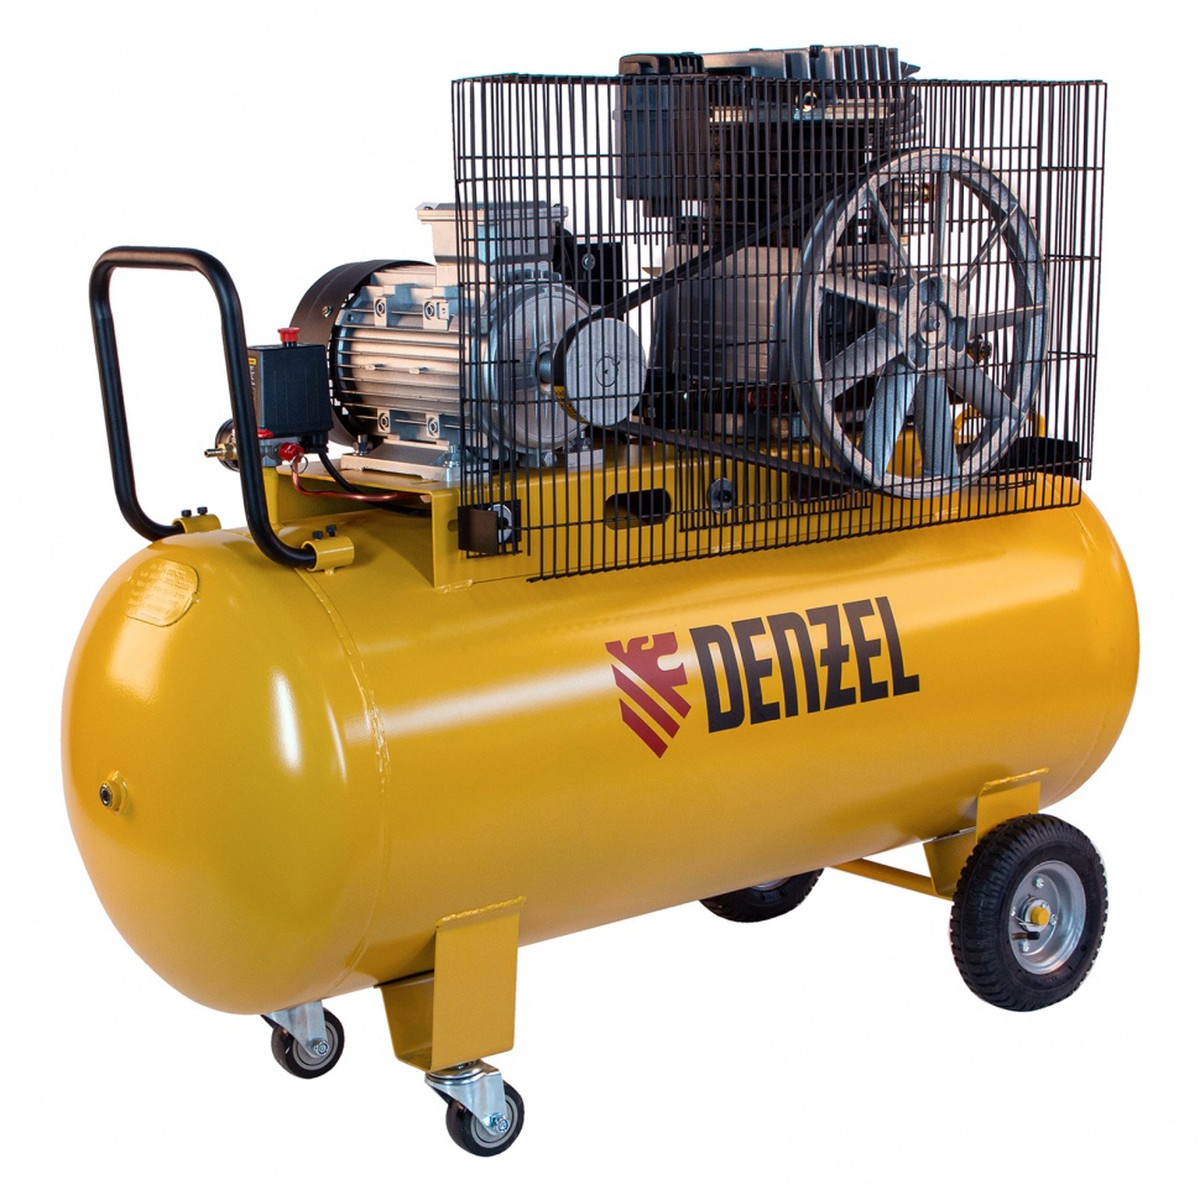 Воздушные компрессоры denzel купить. Компрессор воздушный электрический 220в Denzel. Компрессор Дензел ременной. Компрессор Дензел 200 литров. Компрессор воздушный ременной привод Denzel bci550-t/200 850л/мин 5,5квт.